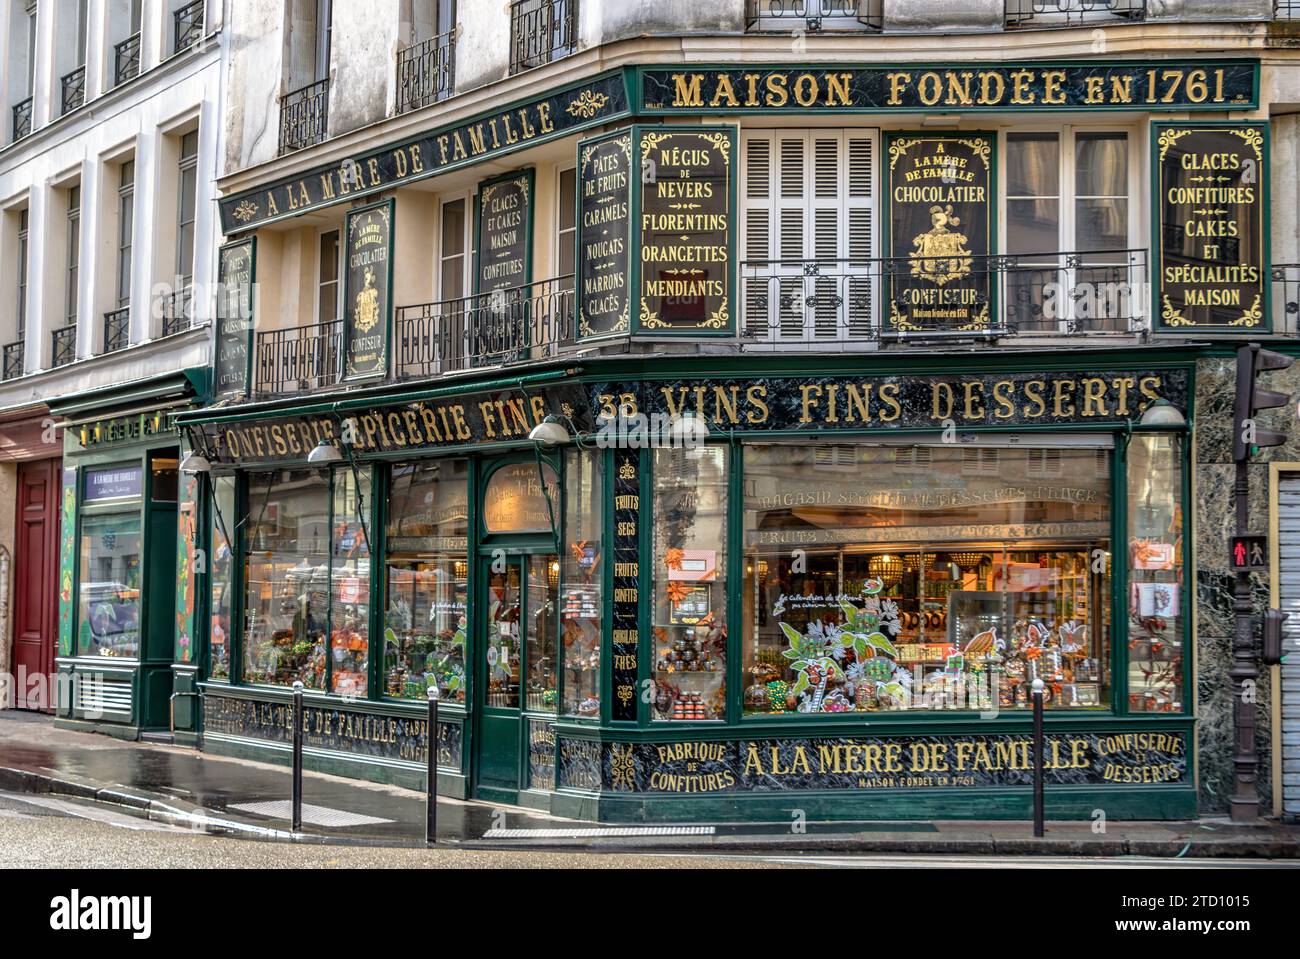 L'extérieur vert et or de l'à la mère de famille , la plus ancienne chocolaterie de Paris situé rue du Faubourg Montmartre, Paris, France Banque D'Images